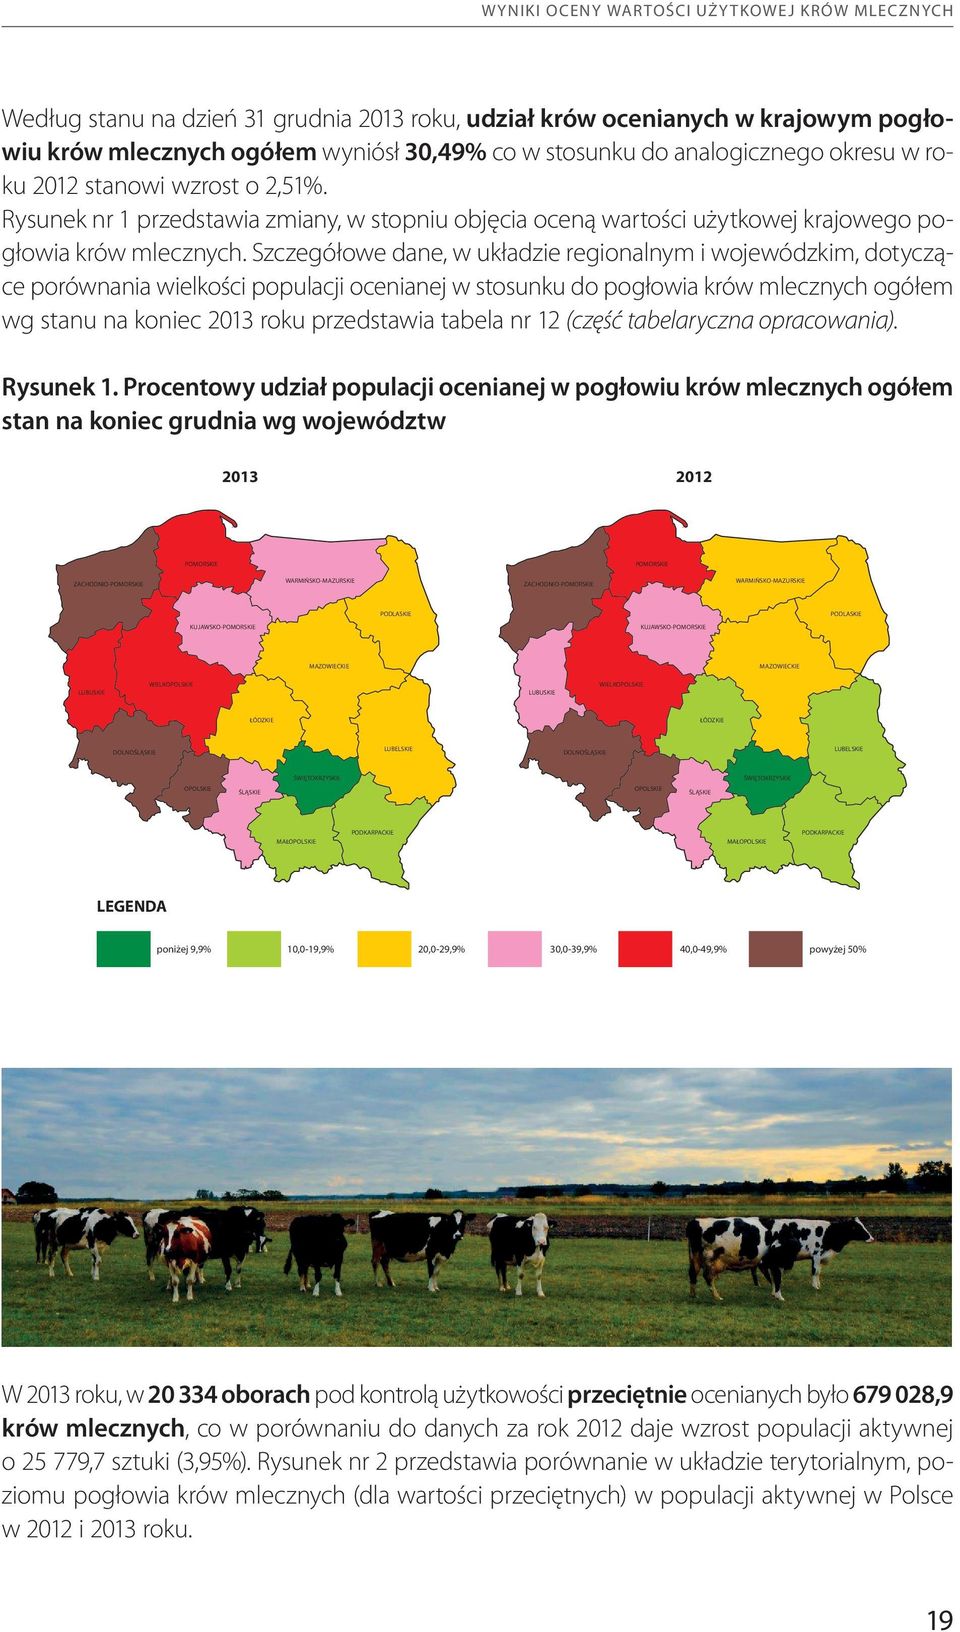 Szczegółowe dane, w układzie regionalnym i wojewódzkim, dotyczące porównania wielkości populacji ocenianej w stosunku do pogłowia krów mlecznych ogółem wg stanu na koniec 2013 roku przedstawia tabela